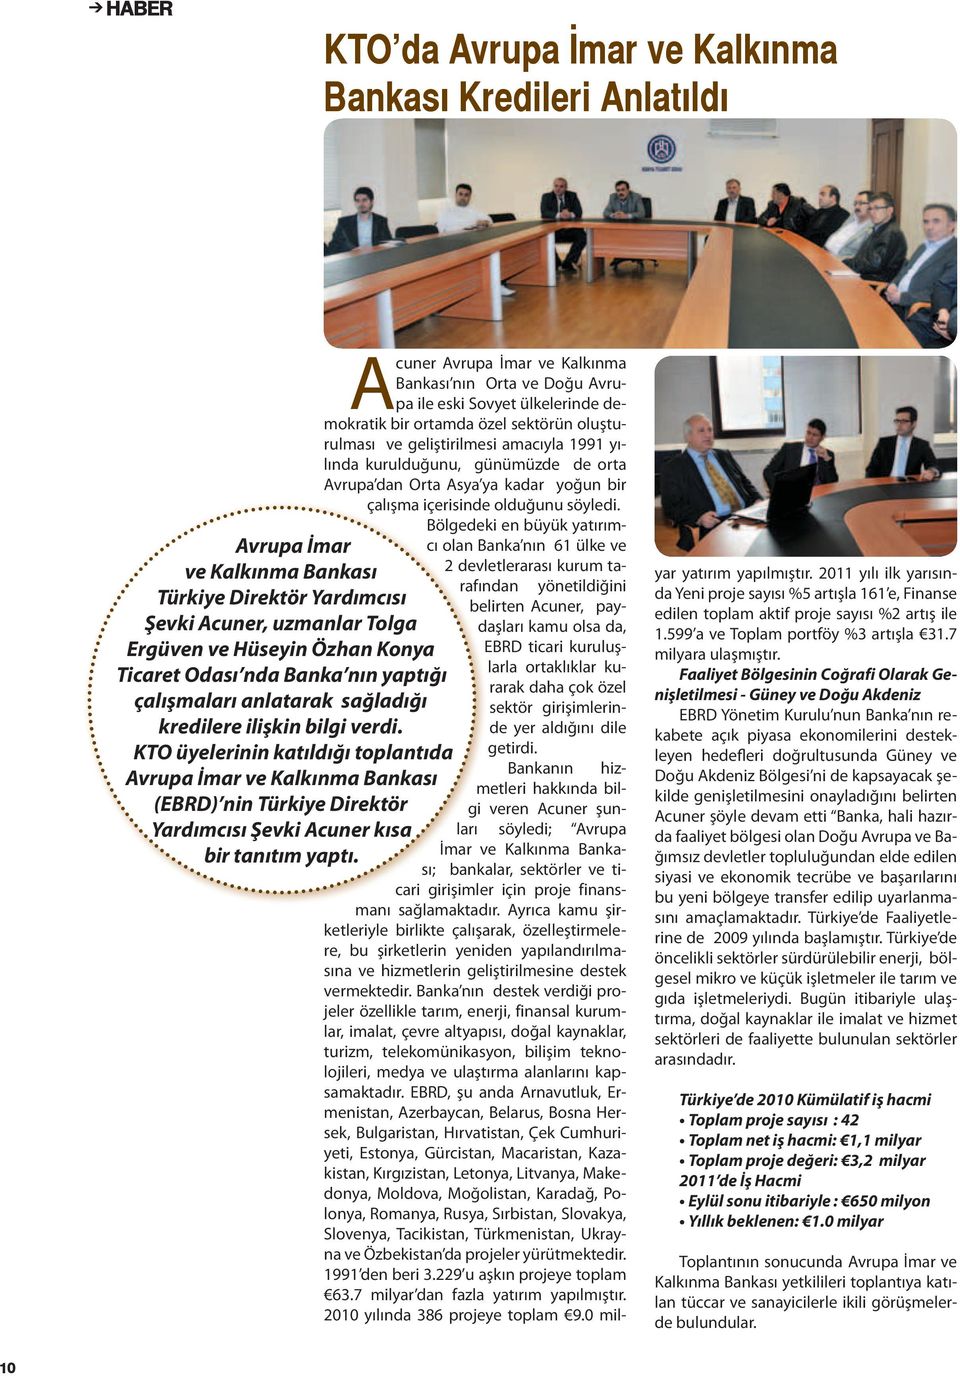 KTO üyelerinin katıldığı toplantıda Avrupa İmar ve Kalkınma Bankası (EBRD) nin Türkiye Direktör Yardımcısı Şevki Acuner kısa bir tanıtım yaptı.